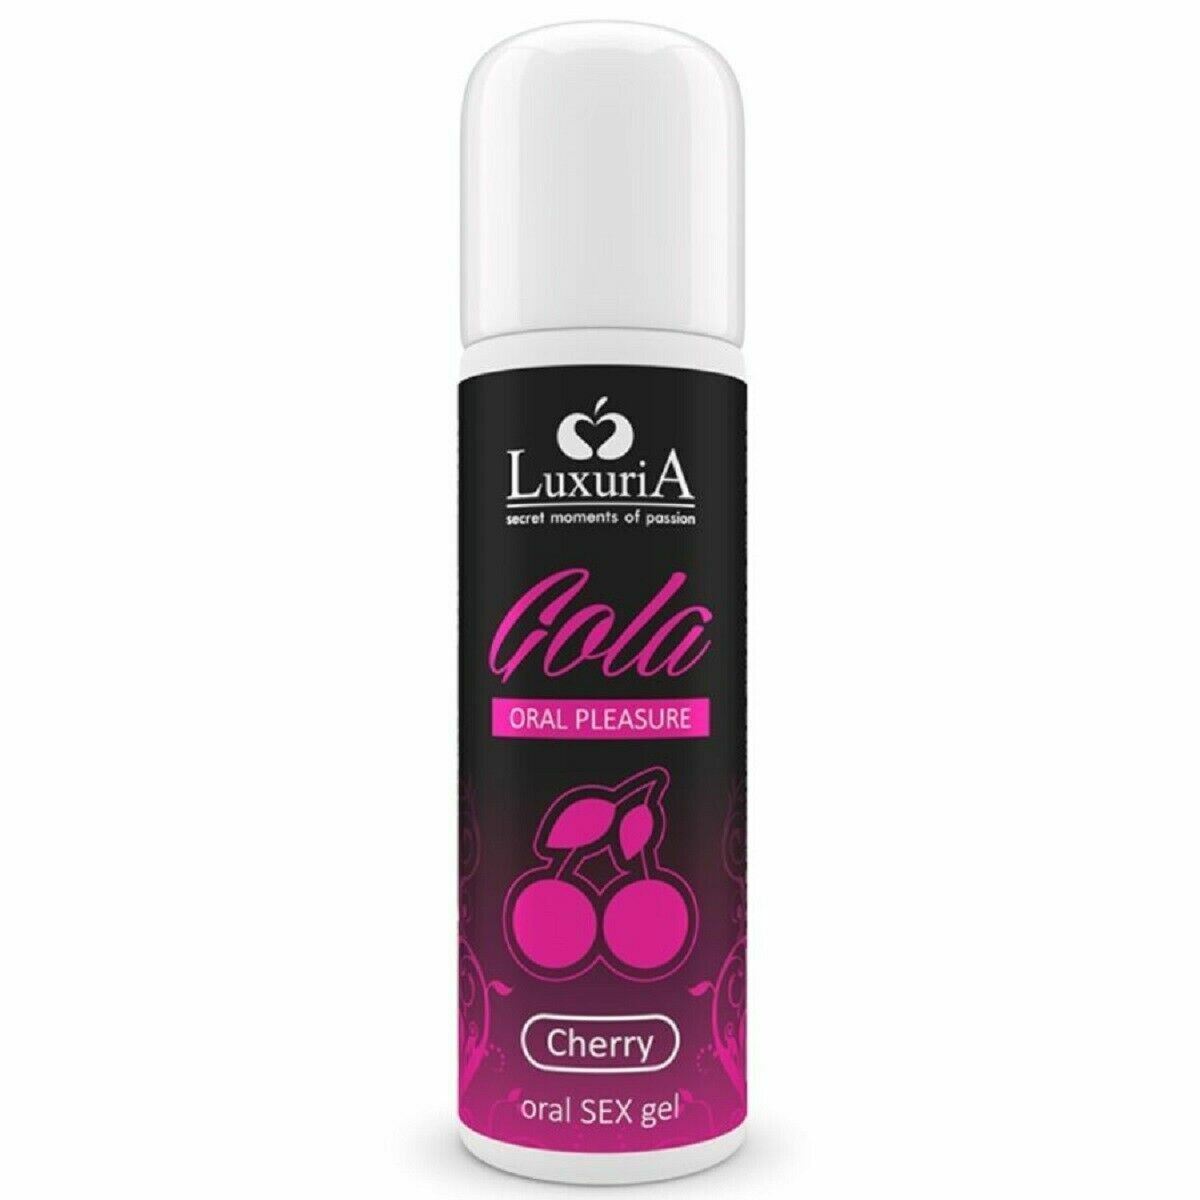 Luxuria Gola Aromatisiertes Oralsex-Gel, kondomsicher, 30 ml 